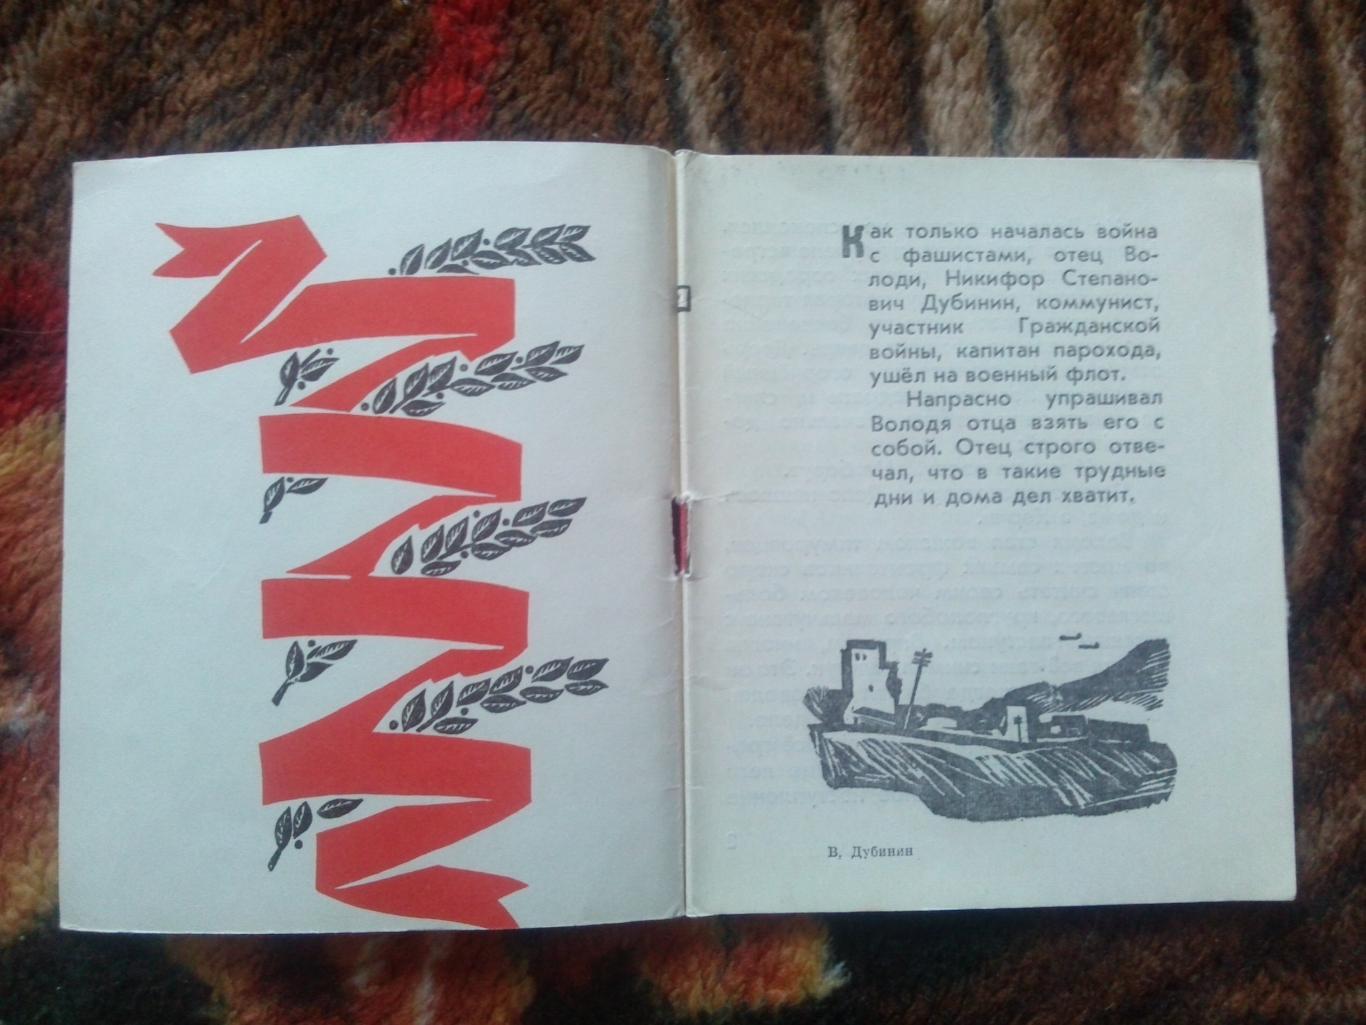 Пионеры-герои (Плакат + брошюра) 1967 г. Володя Дубинин (Пионер , агитация) 5